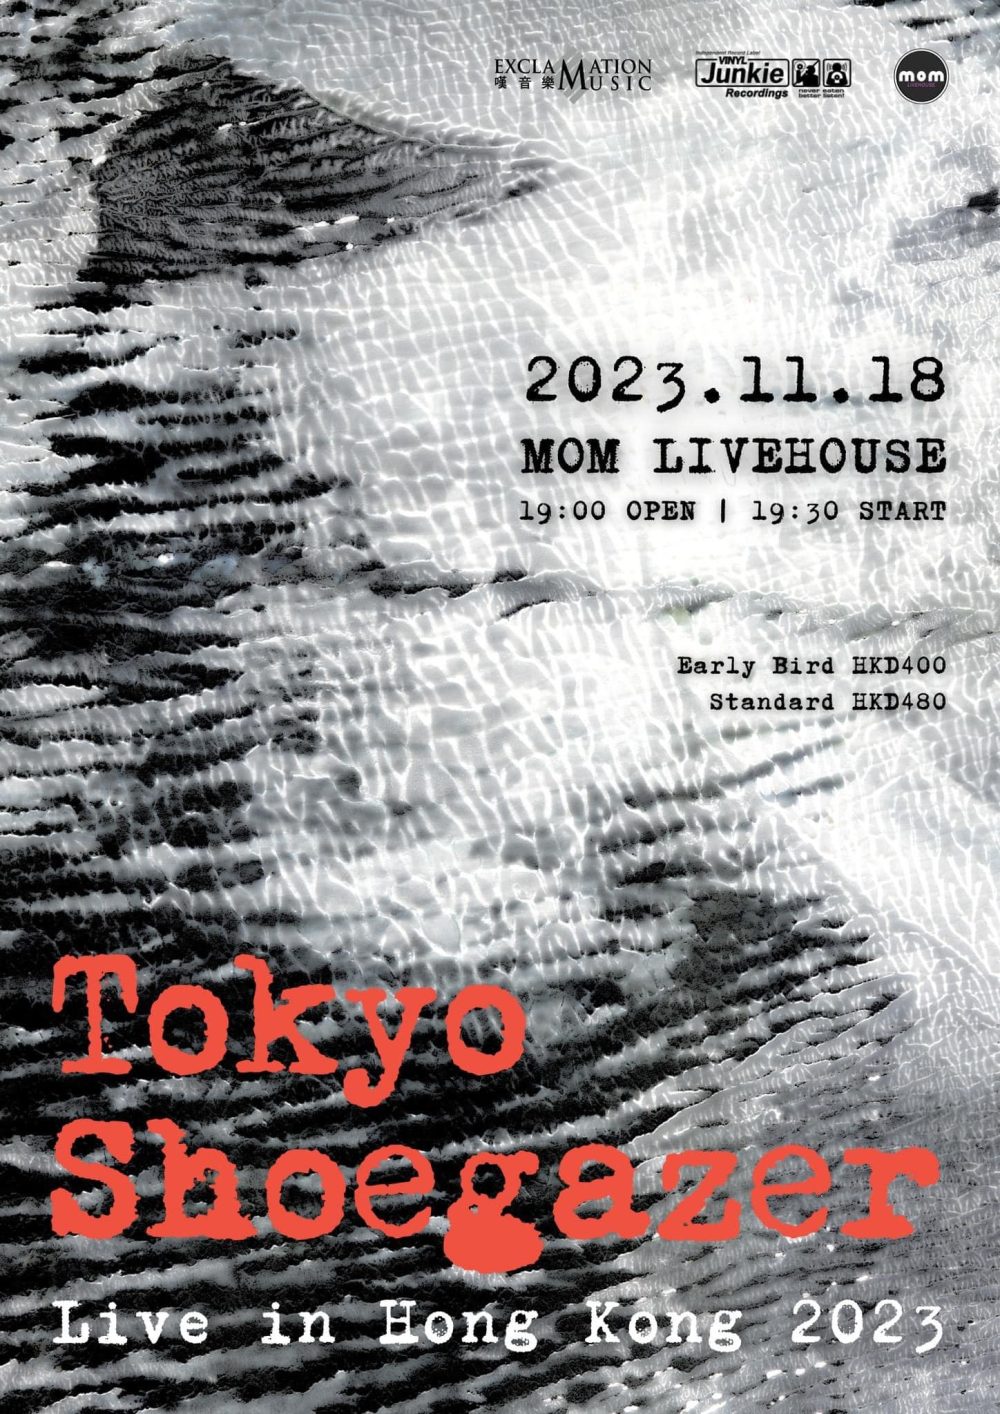 Tokyo Shoegazer